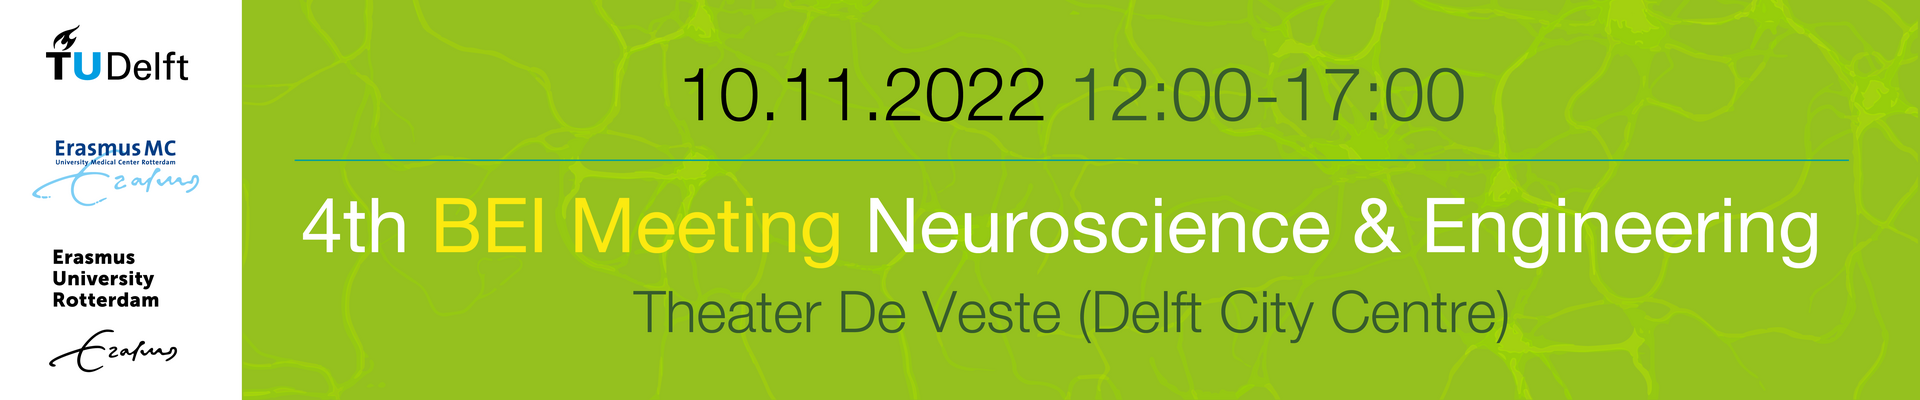 4th BEI Meeting Neuroscience & Engineering